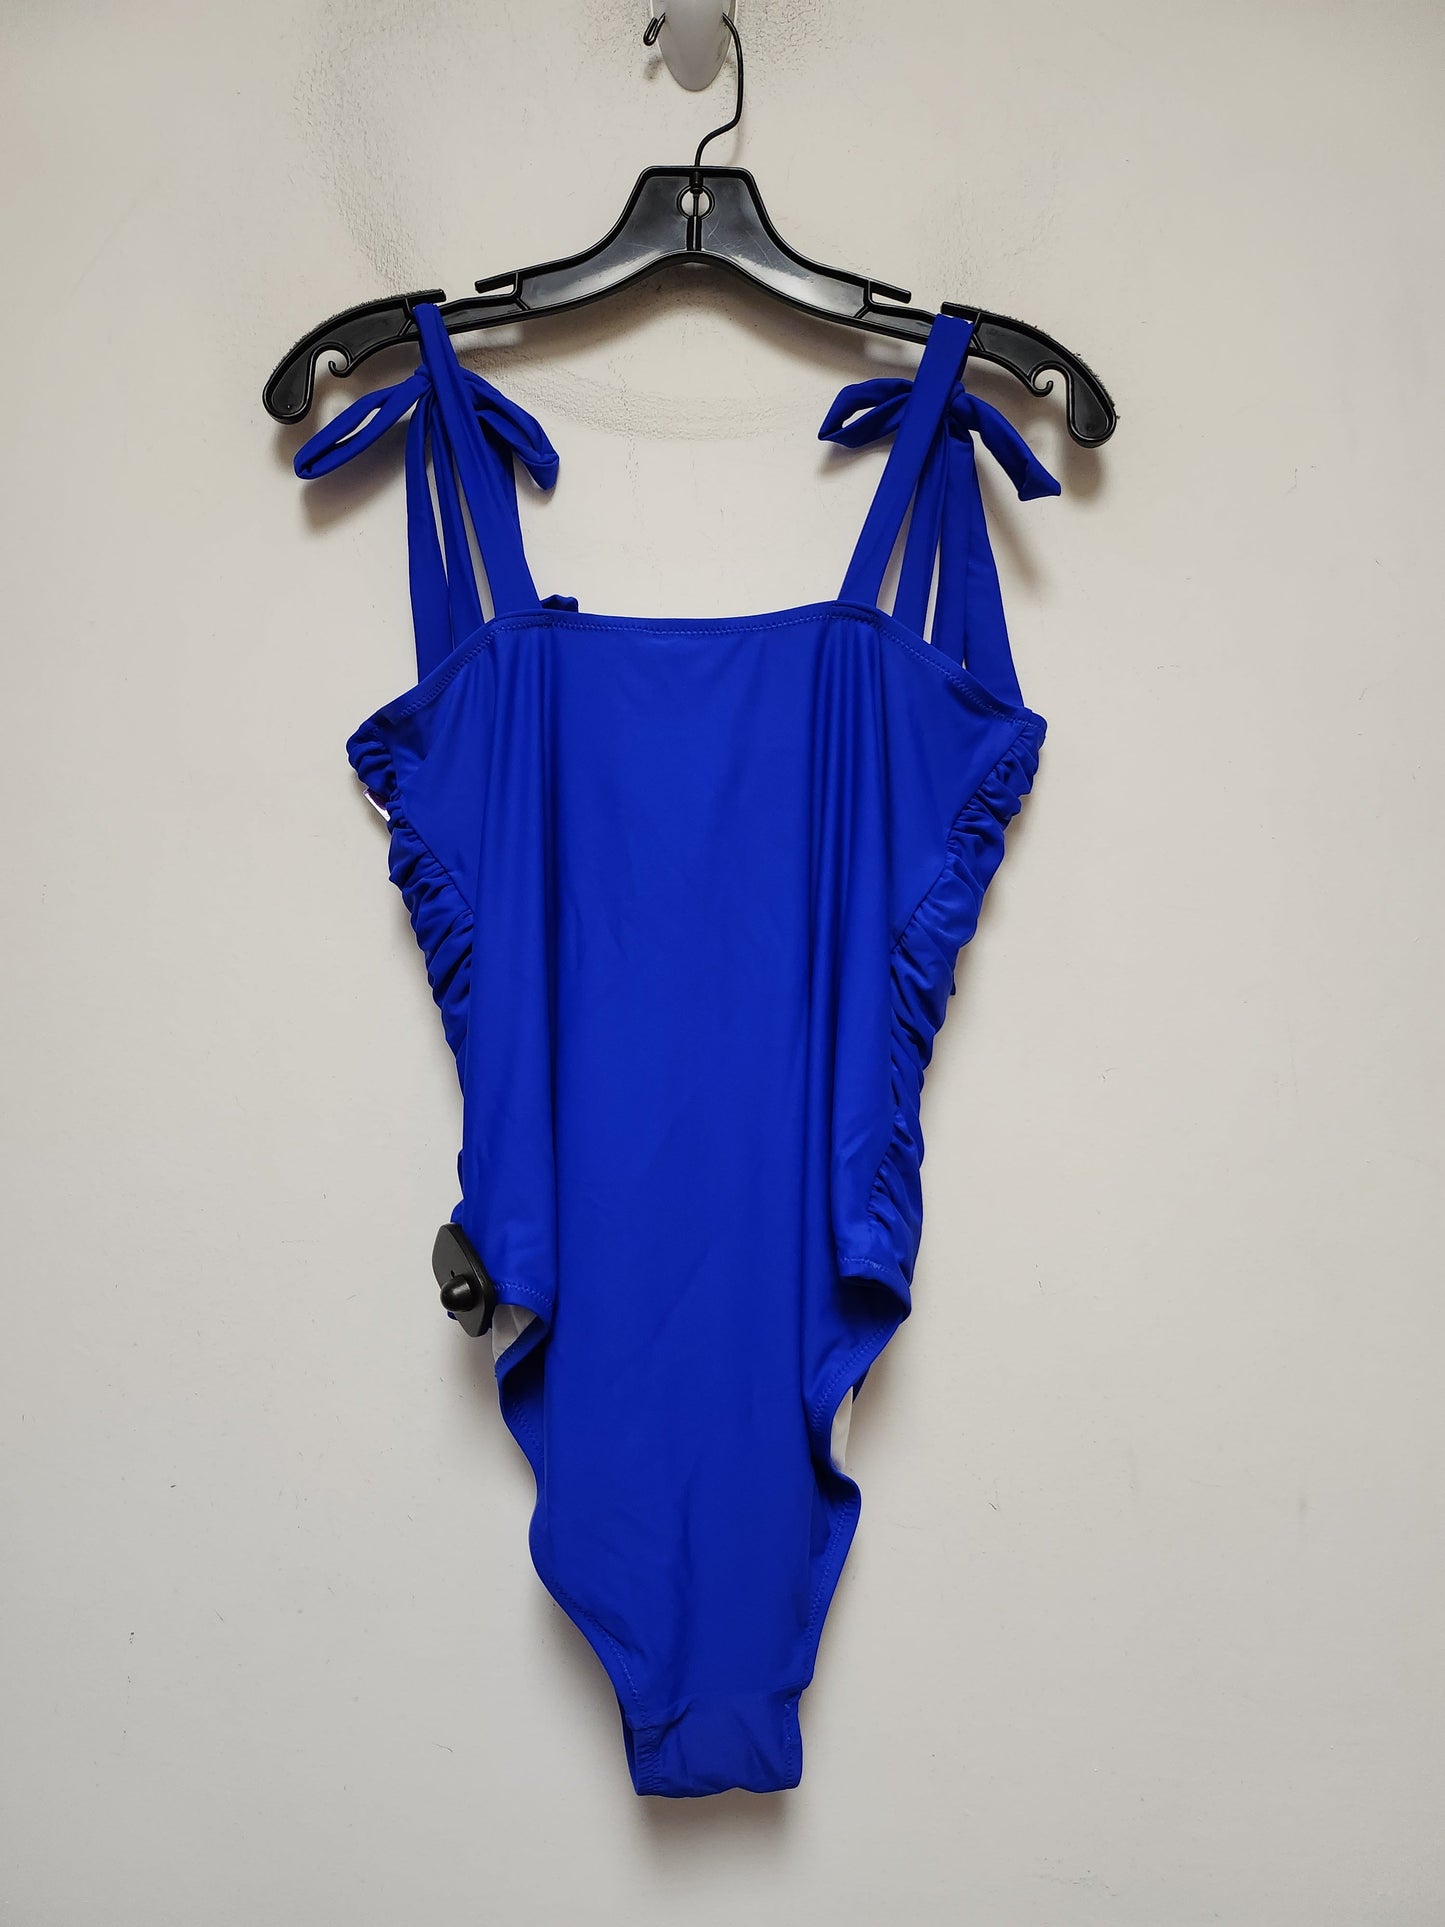 Blue Swimsuit Clothes Mentor, Size Xl